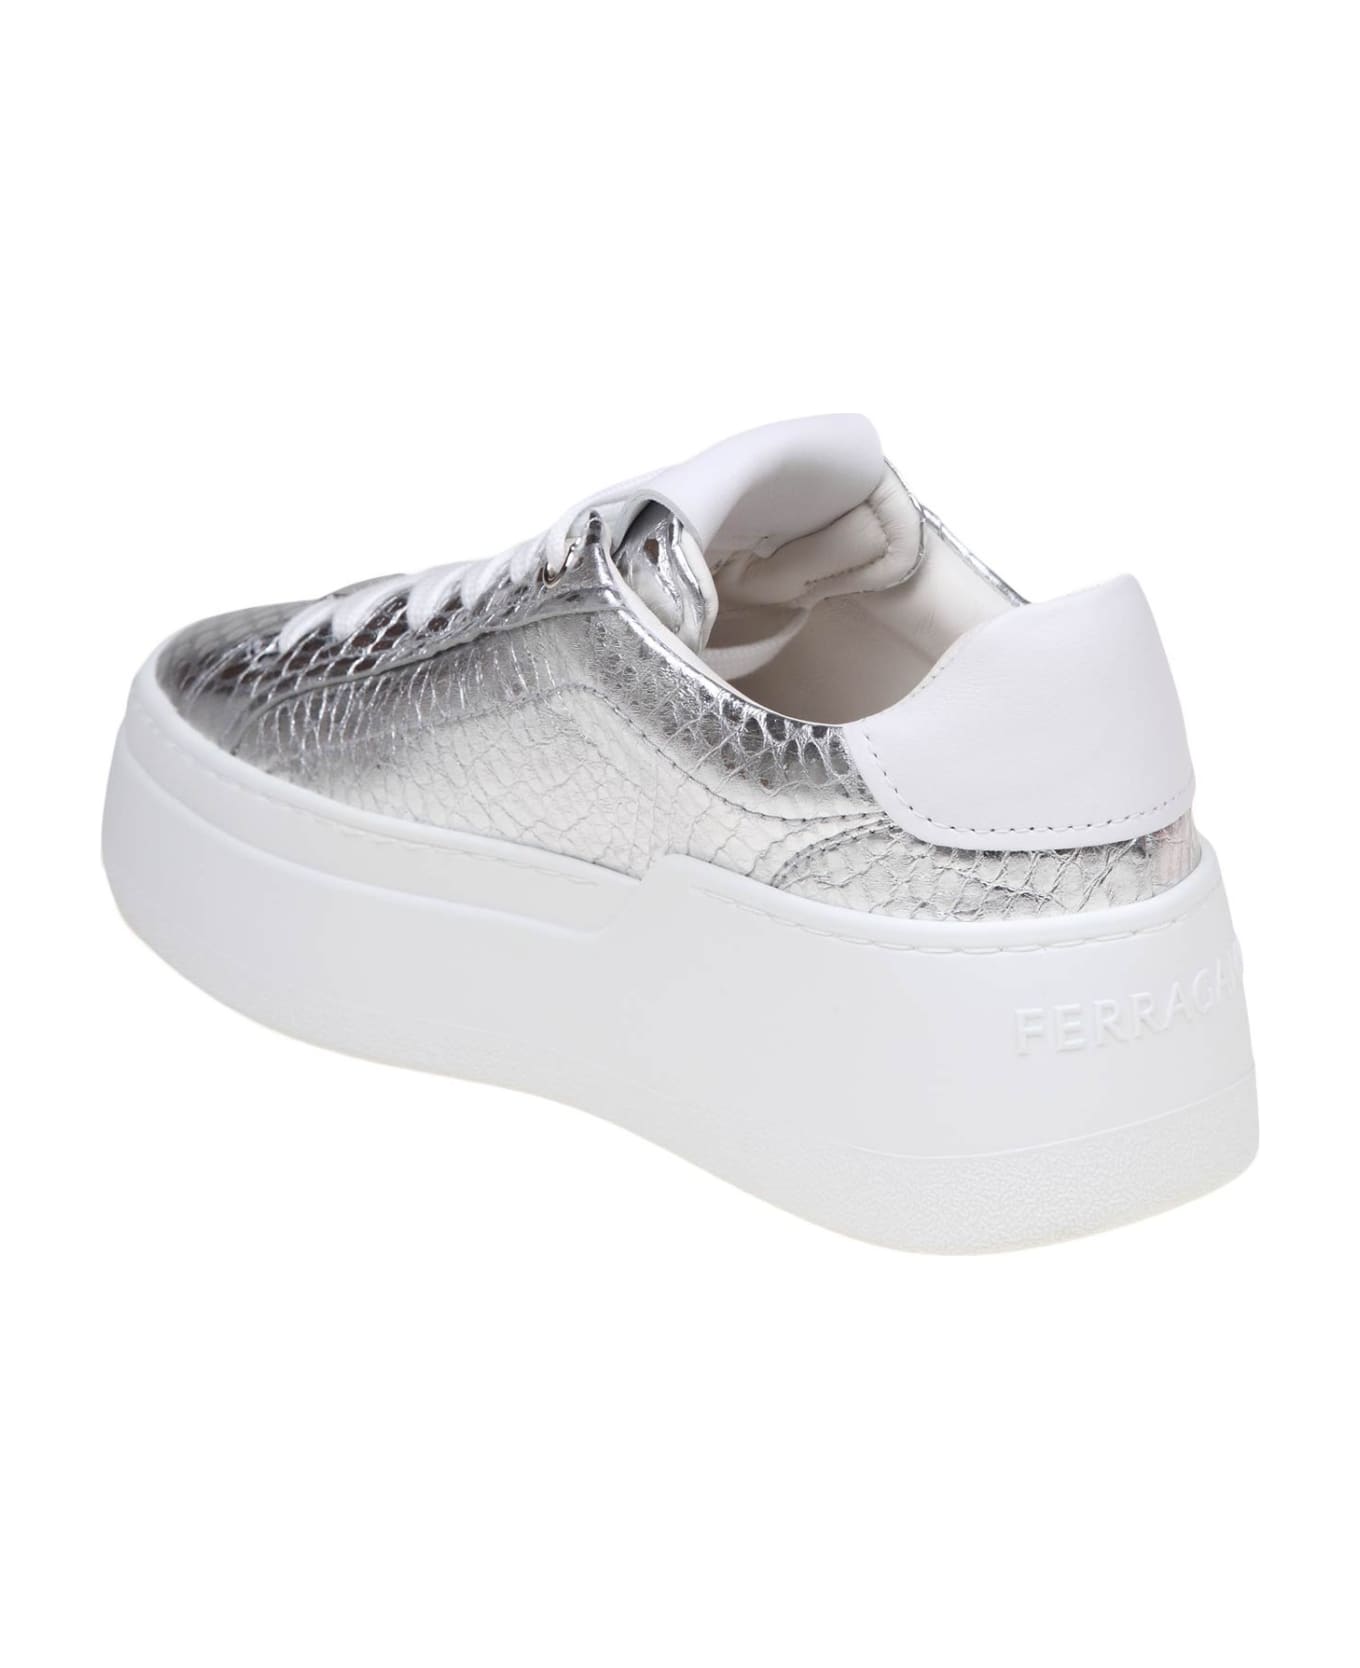 Ferragamo Sneakers Dahlia In Pelle Colore Argento - Silver ウェッジシューズ